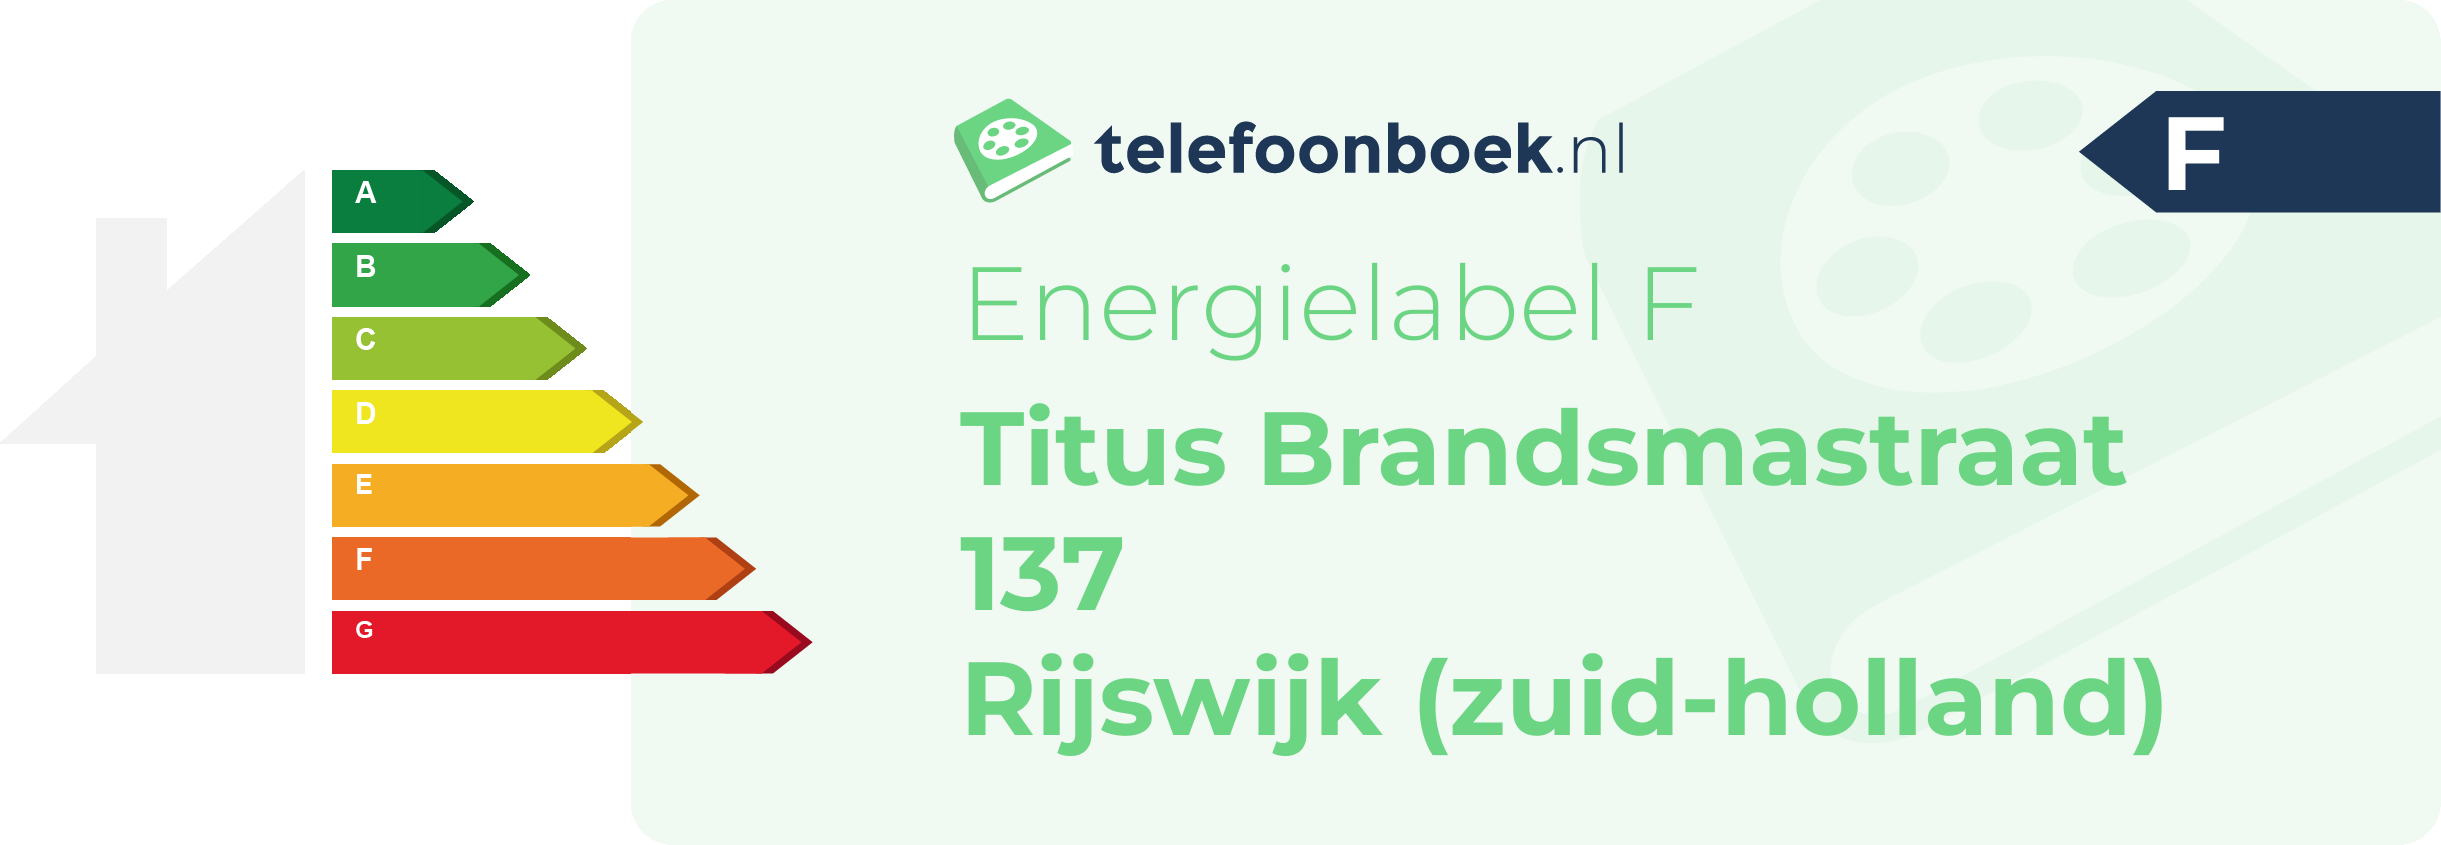 Energielabel Titus Brandsmastraat 137 Rijswijk (Zuid-Holland)